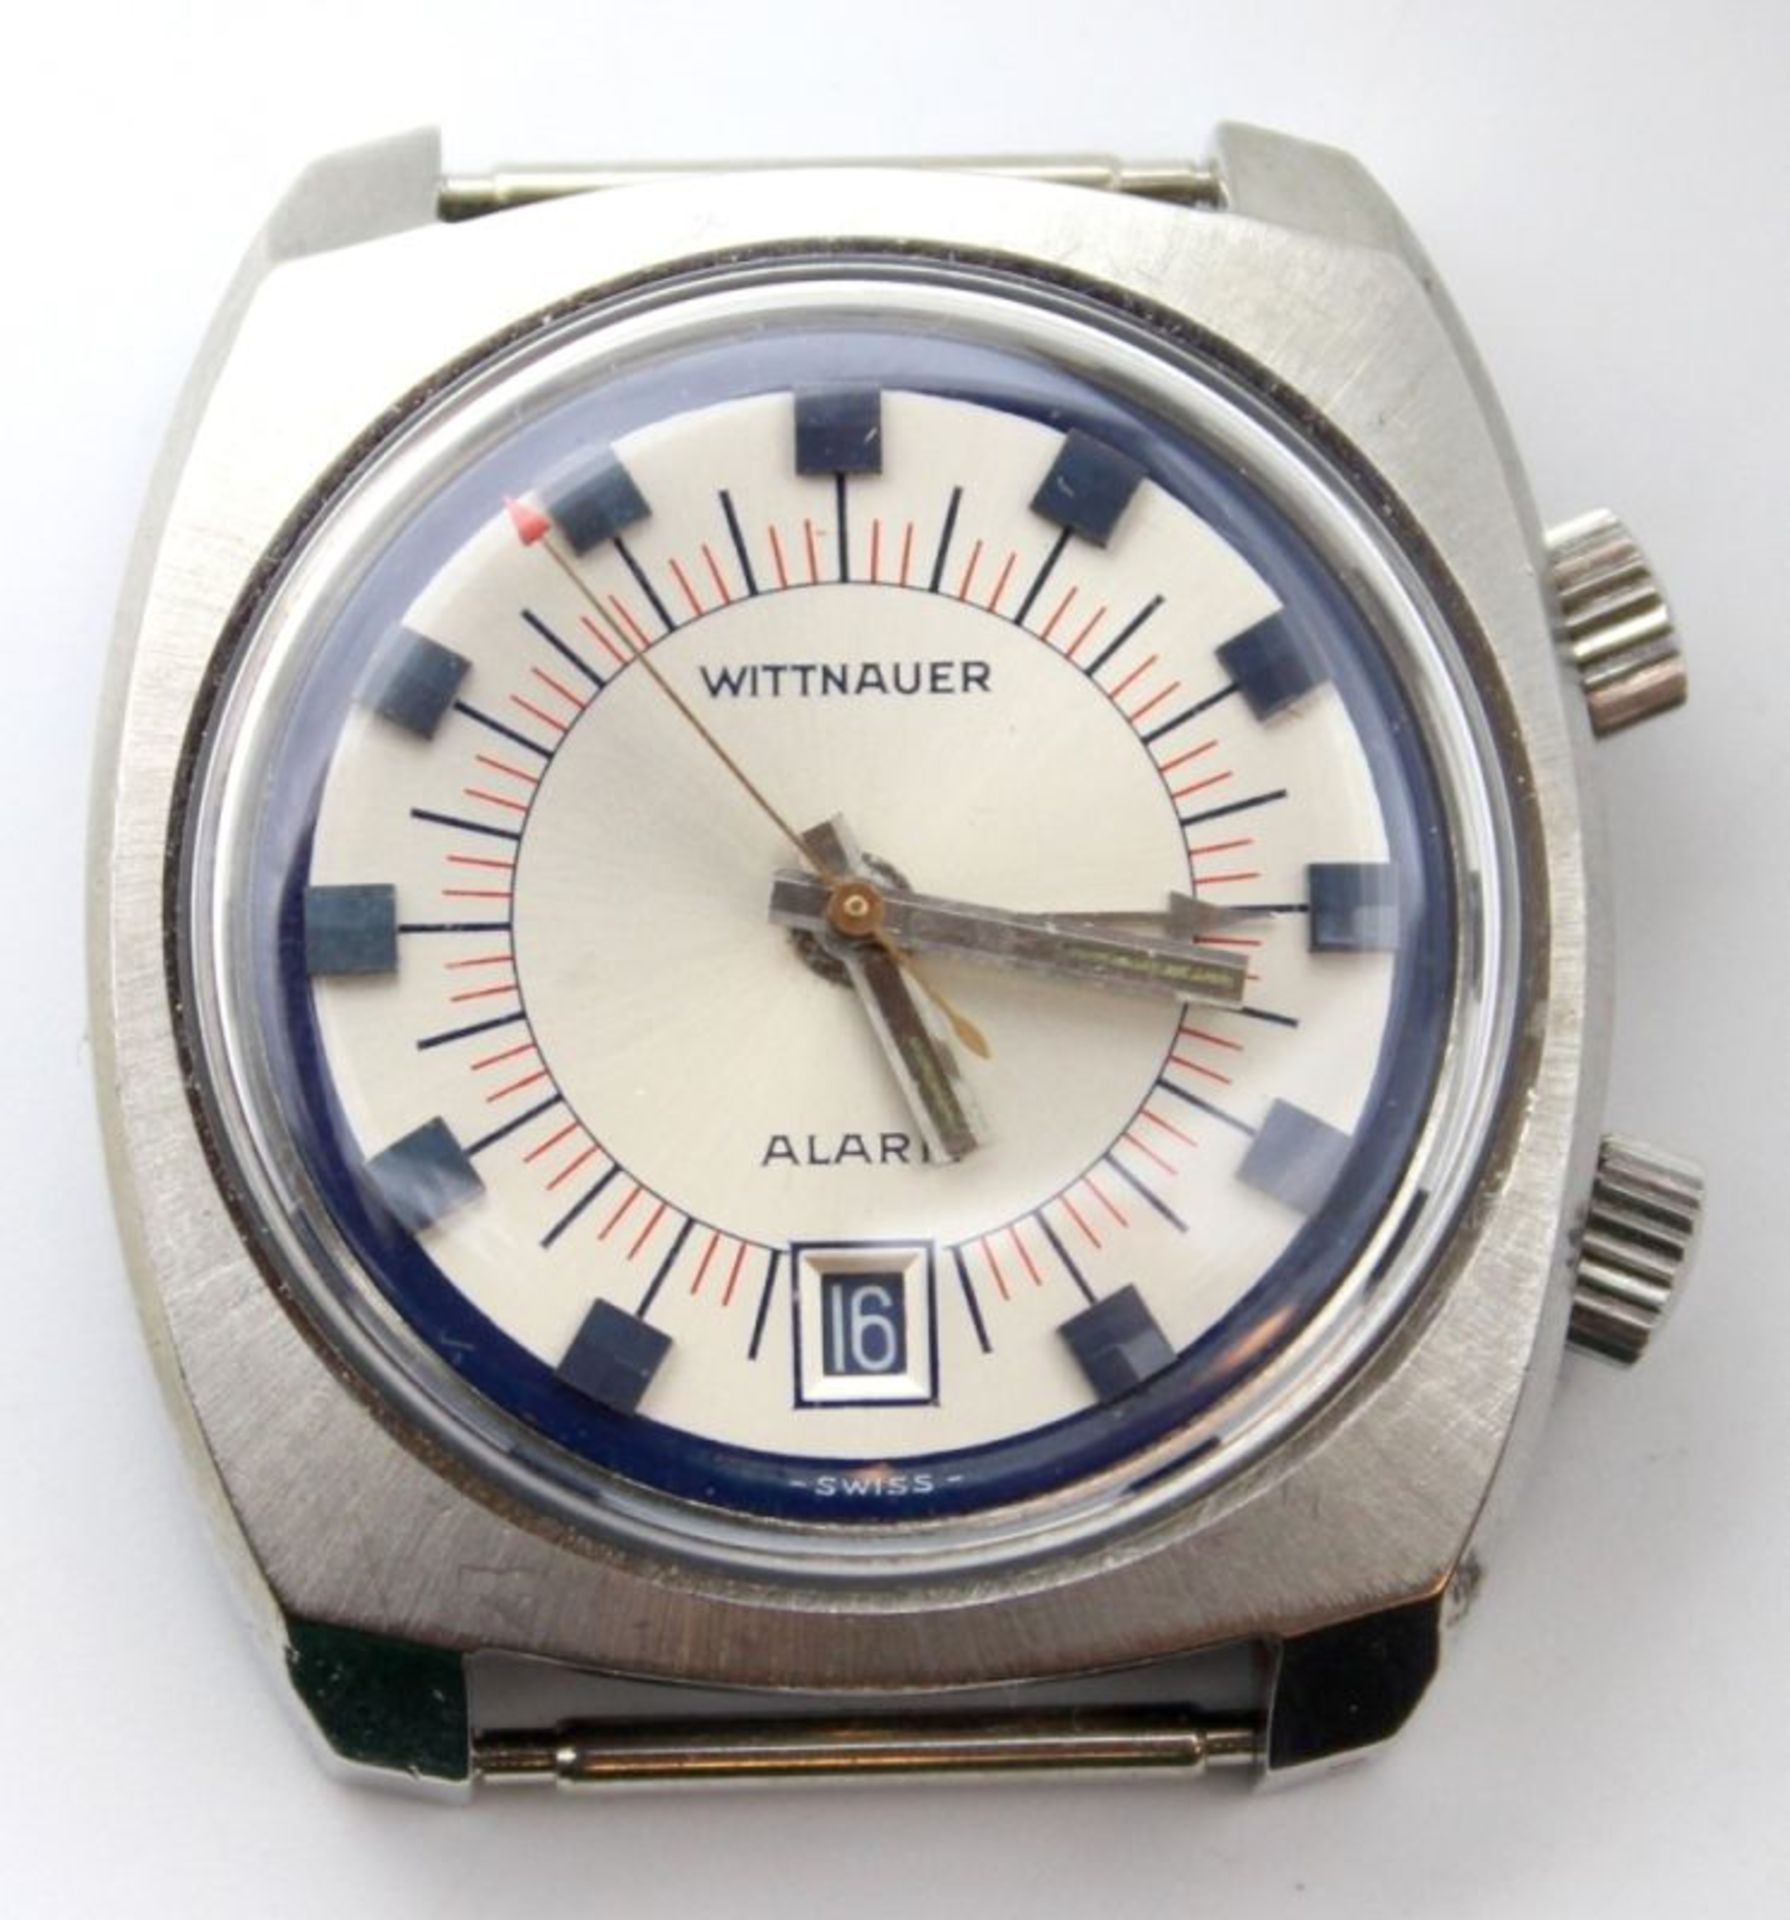 Armbanduhr - Marke Wittnauer (Schweiz) um 1965, Stahlgehäuse, Alarm, Datumsanzeige, mechanisches